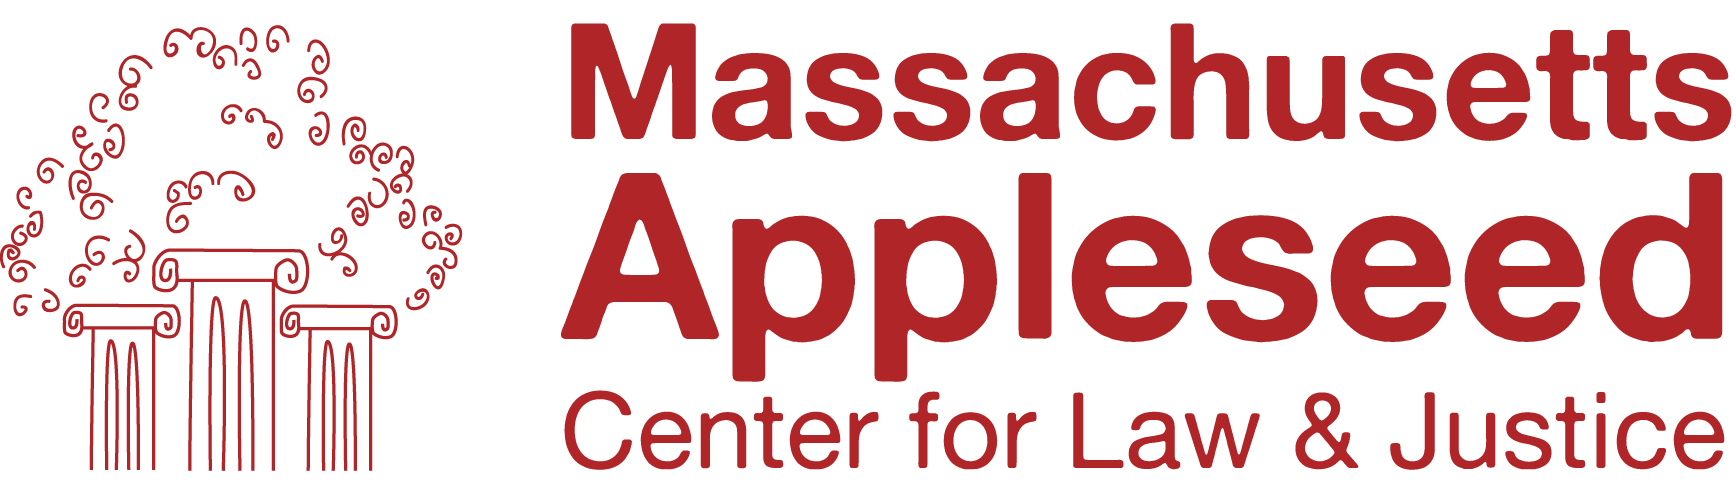 Massachusetts Logo Left